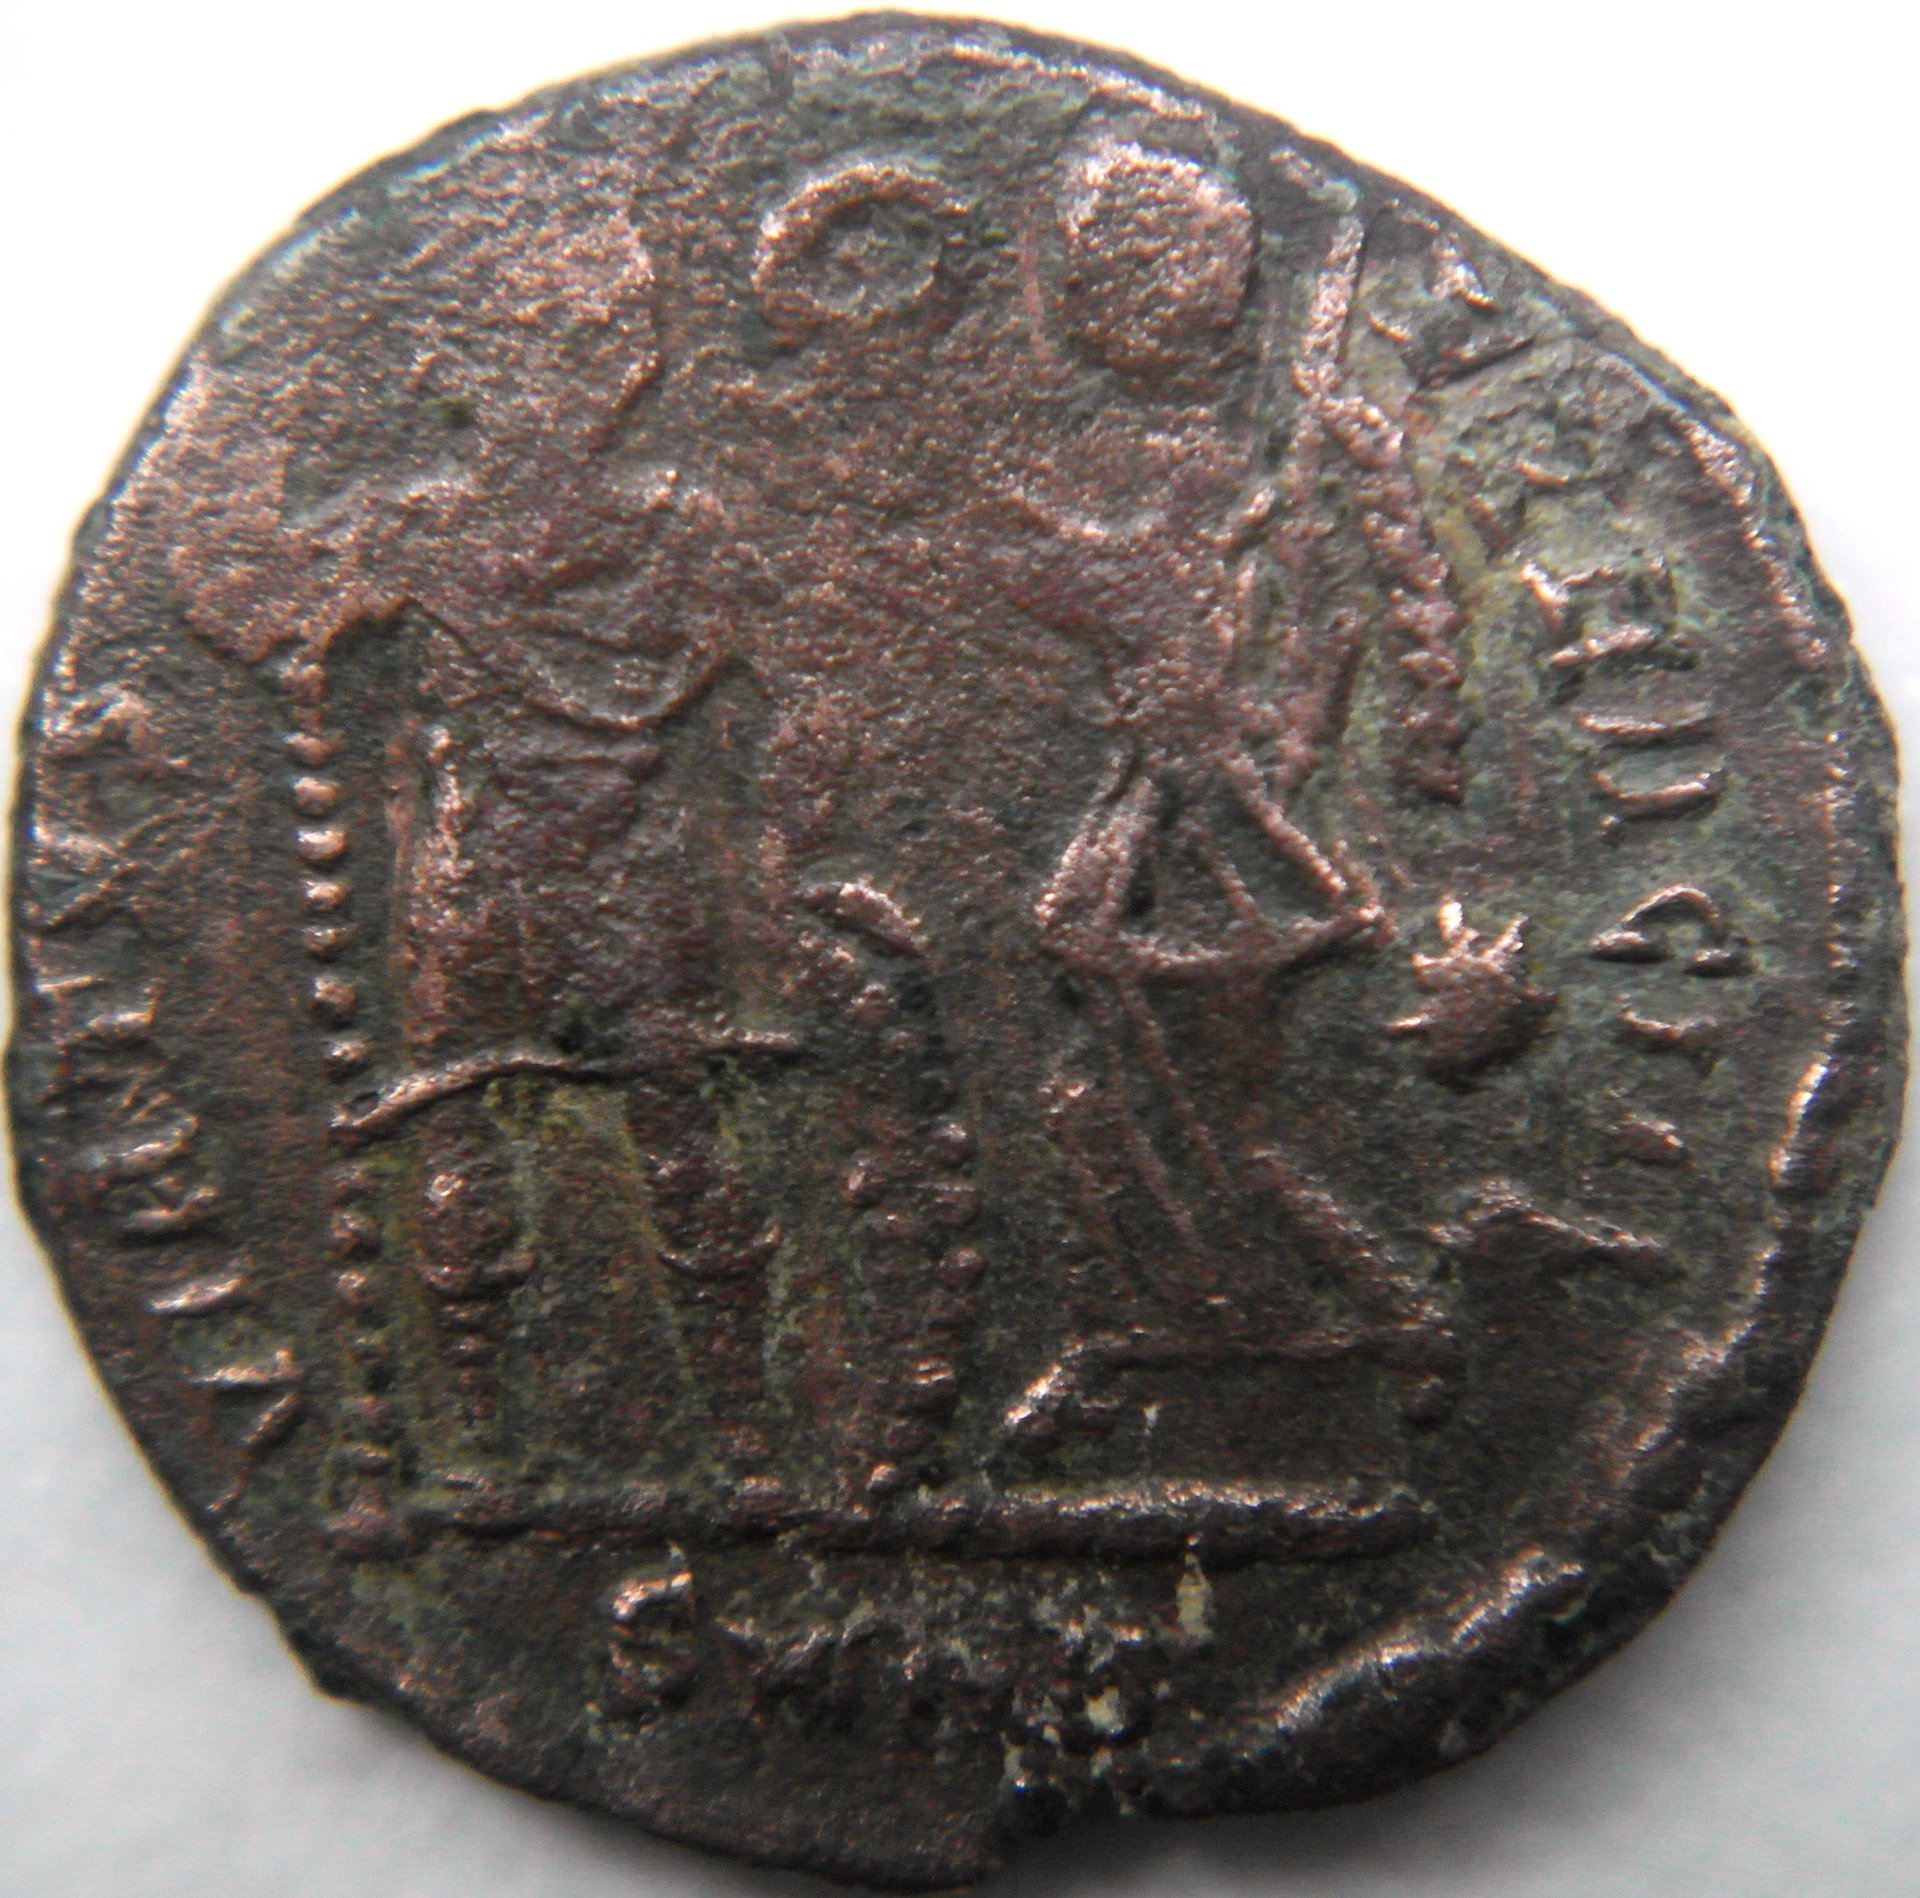 Flavius HONORIUS (395-423 AD) | Coin Talk